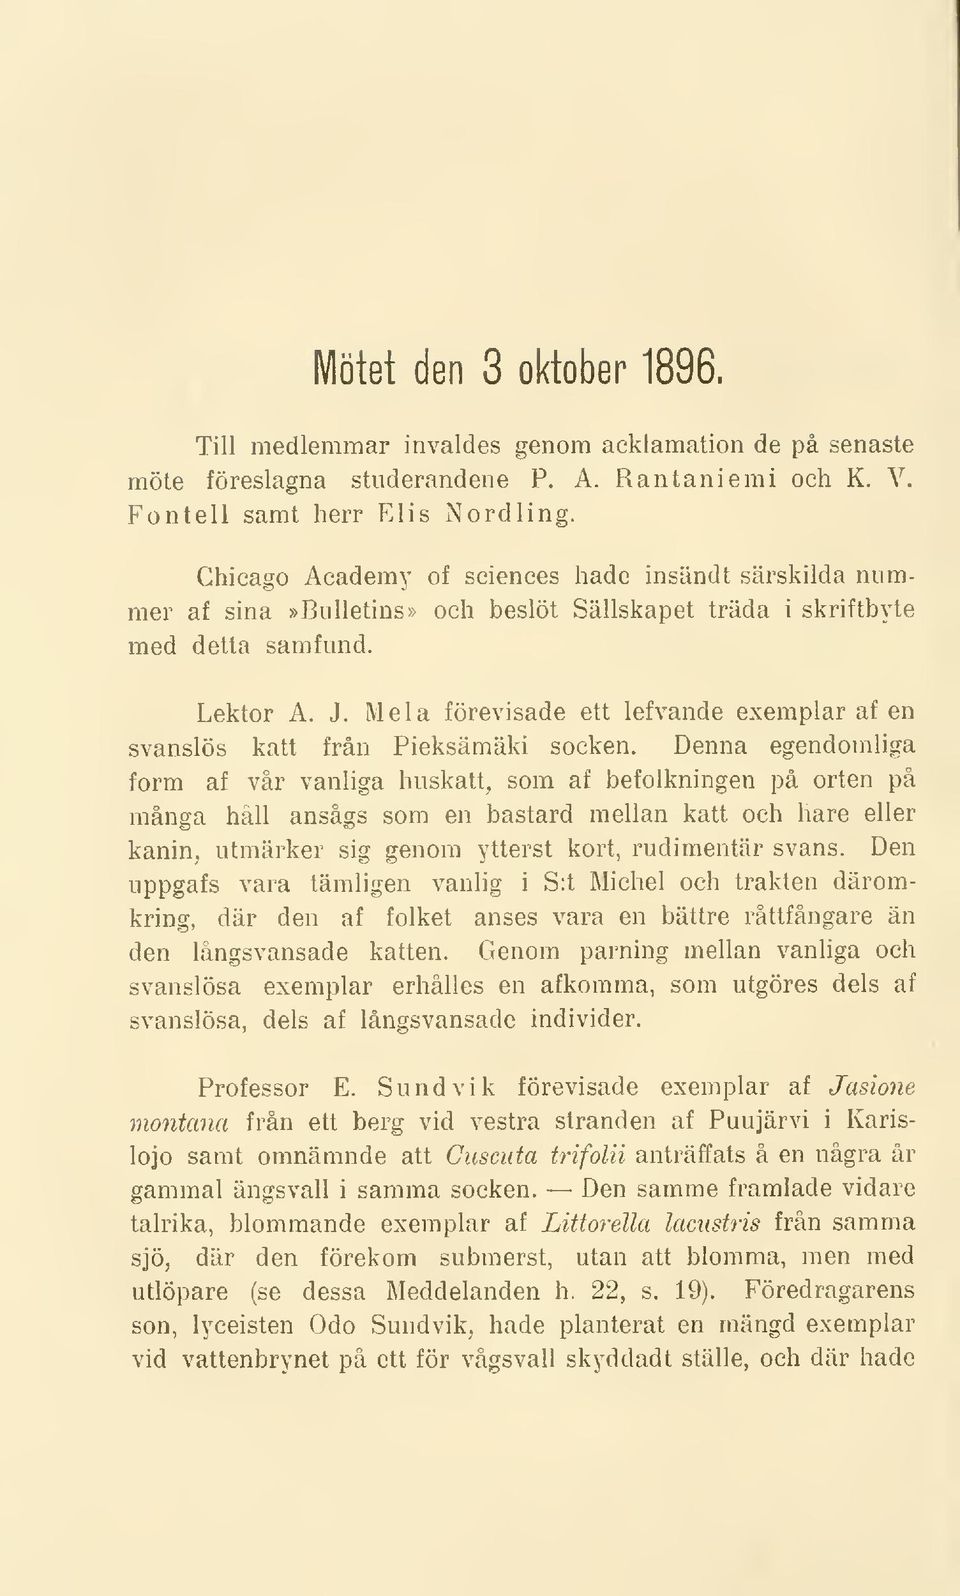 Mela förevisade ett lefvande exemplarafen svanslös katt från Pieksämäki socken.